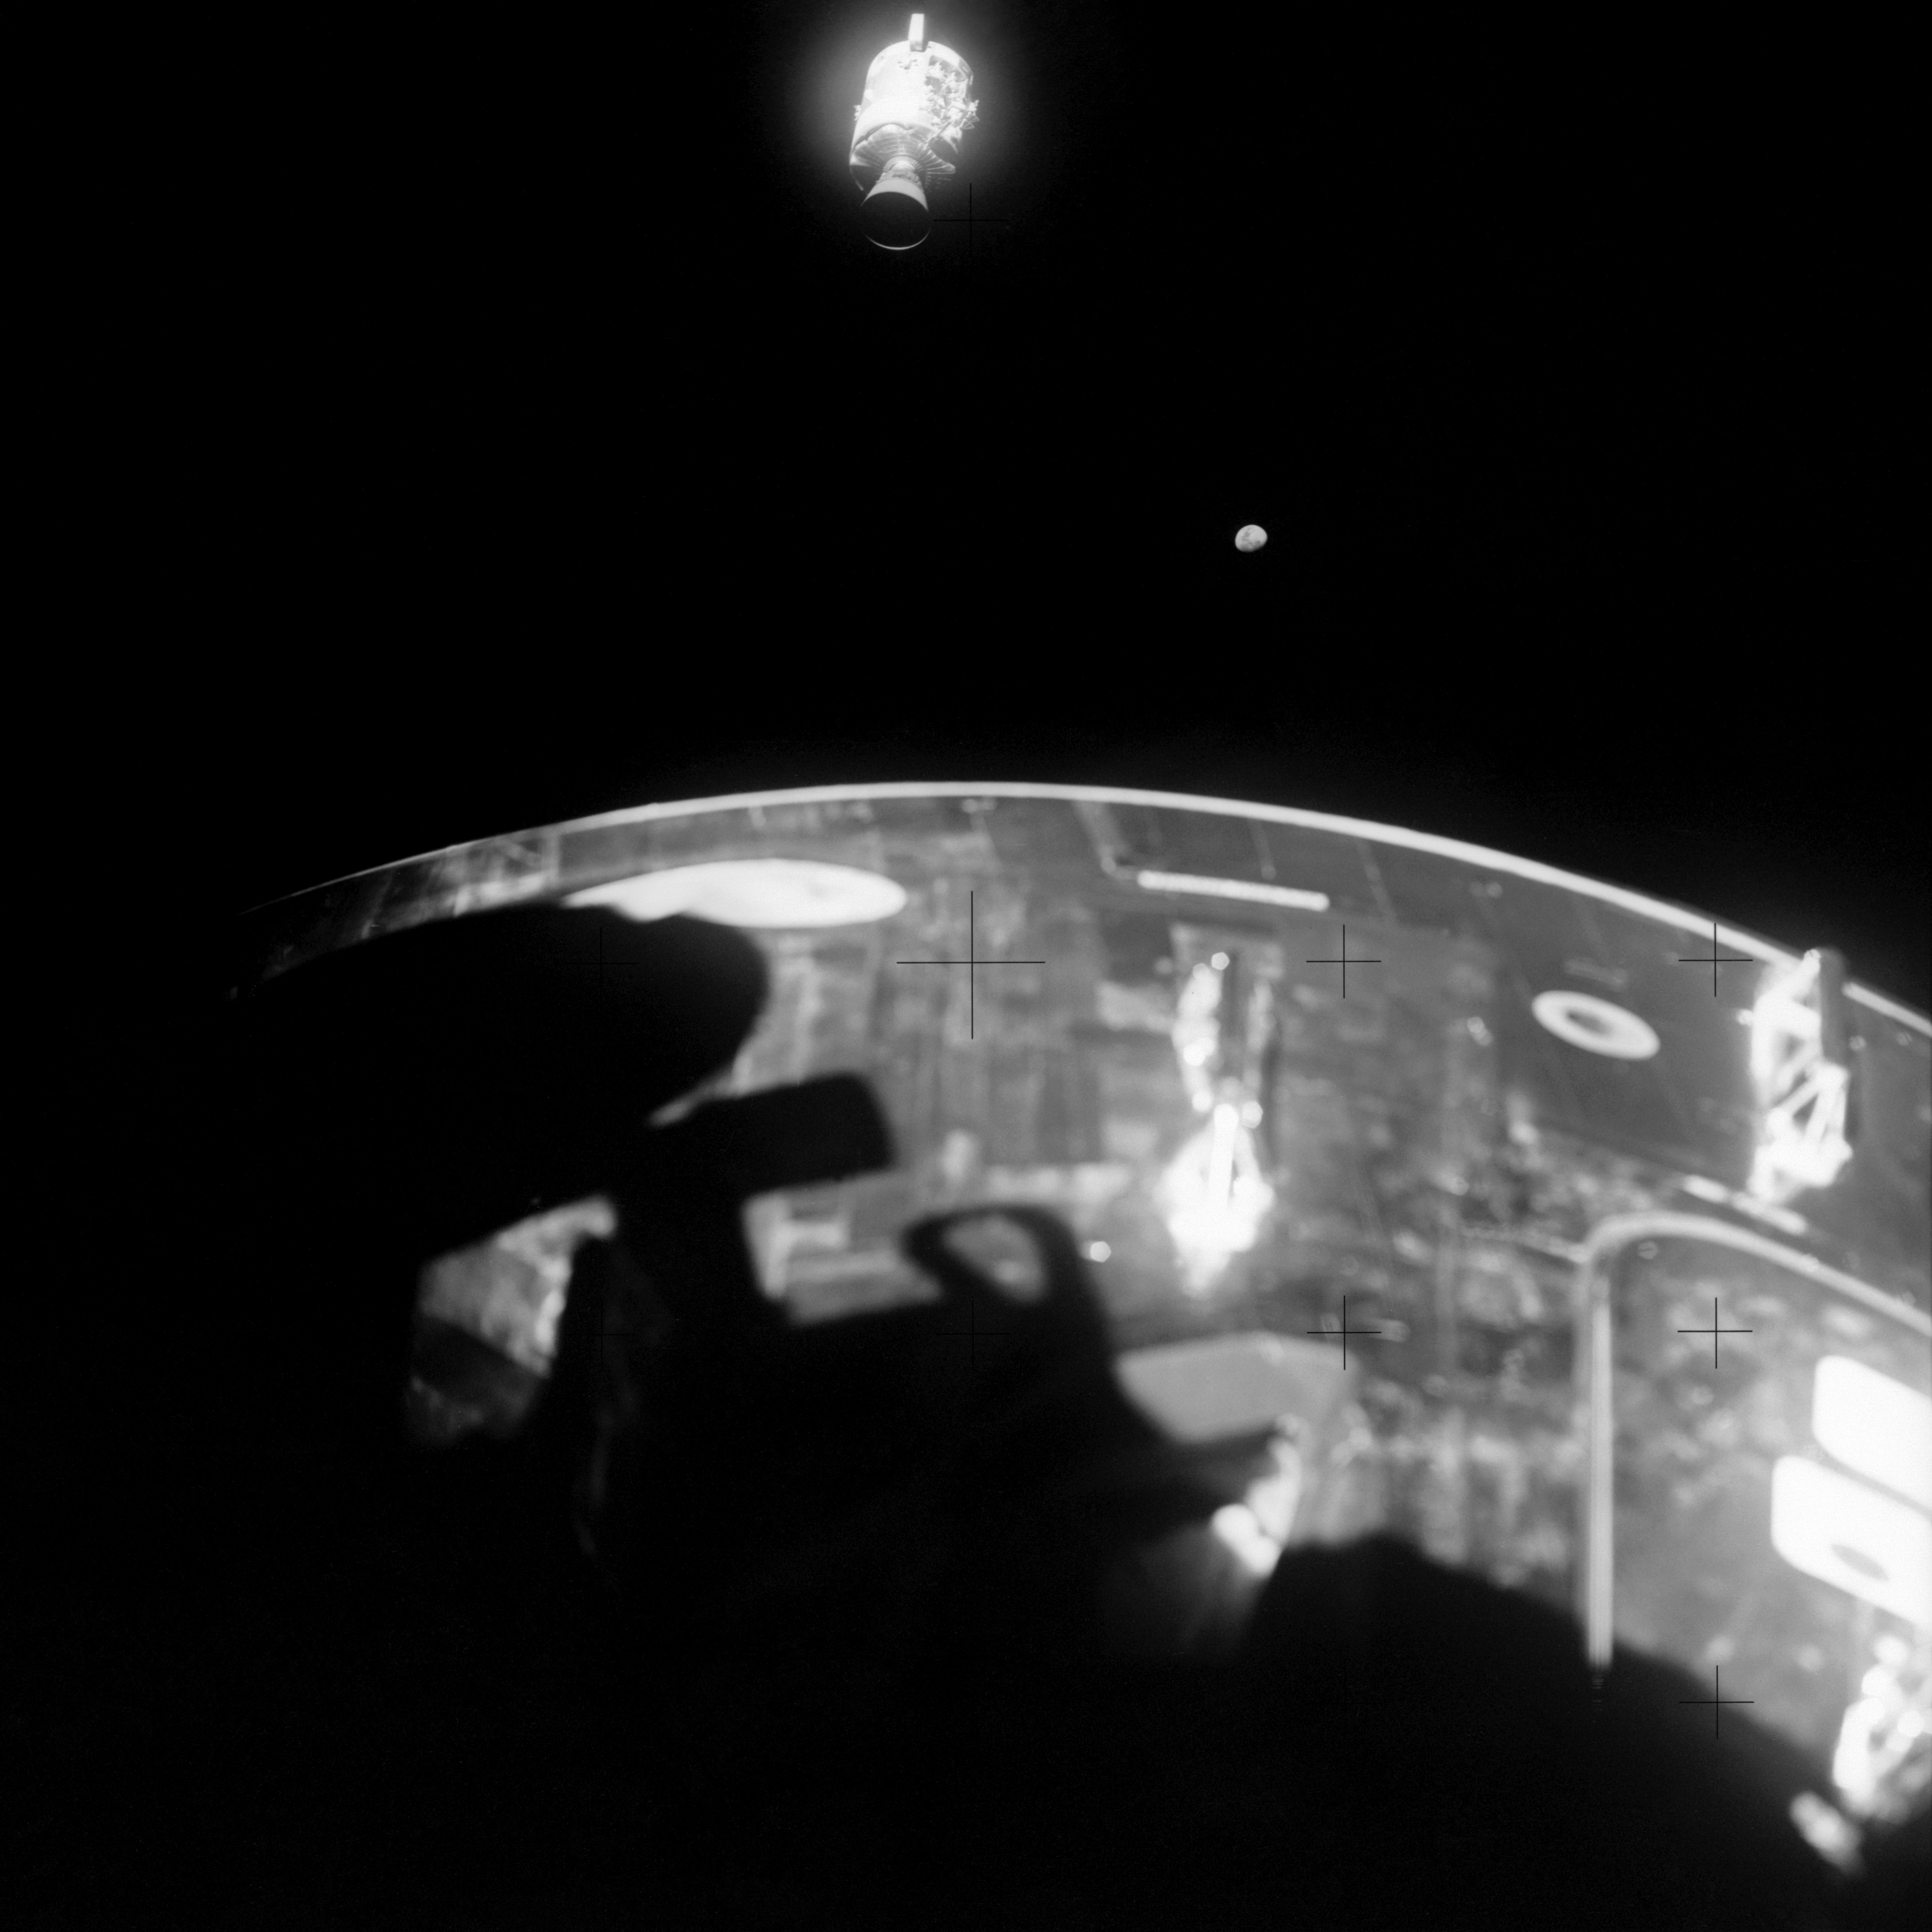 Apollo 13 Command Module Odyssey